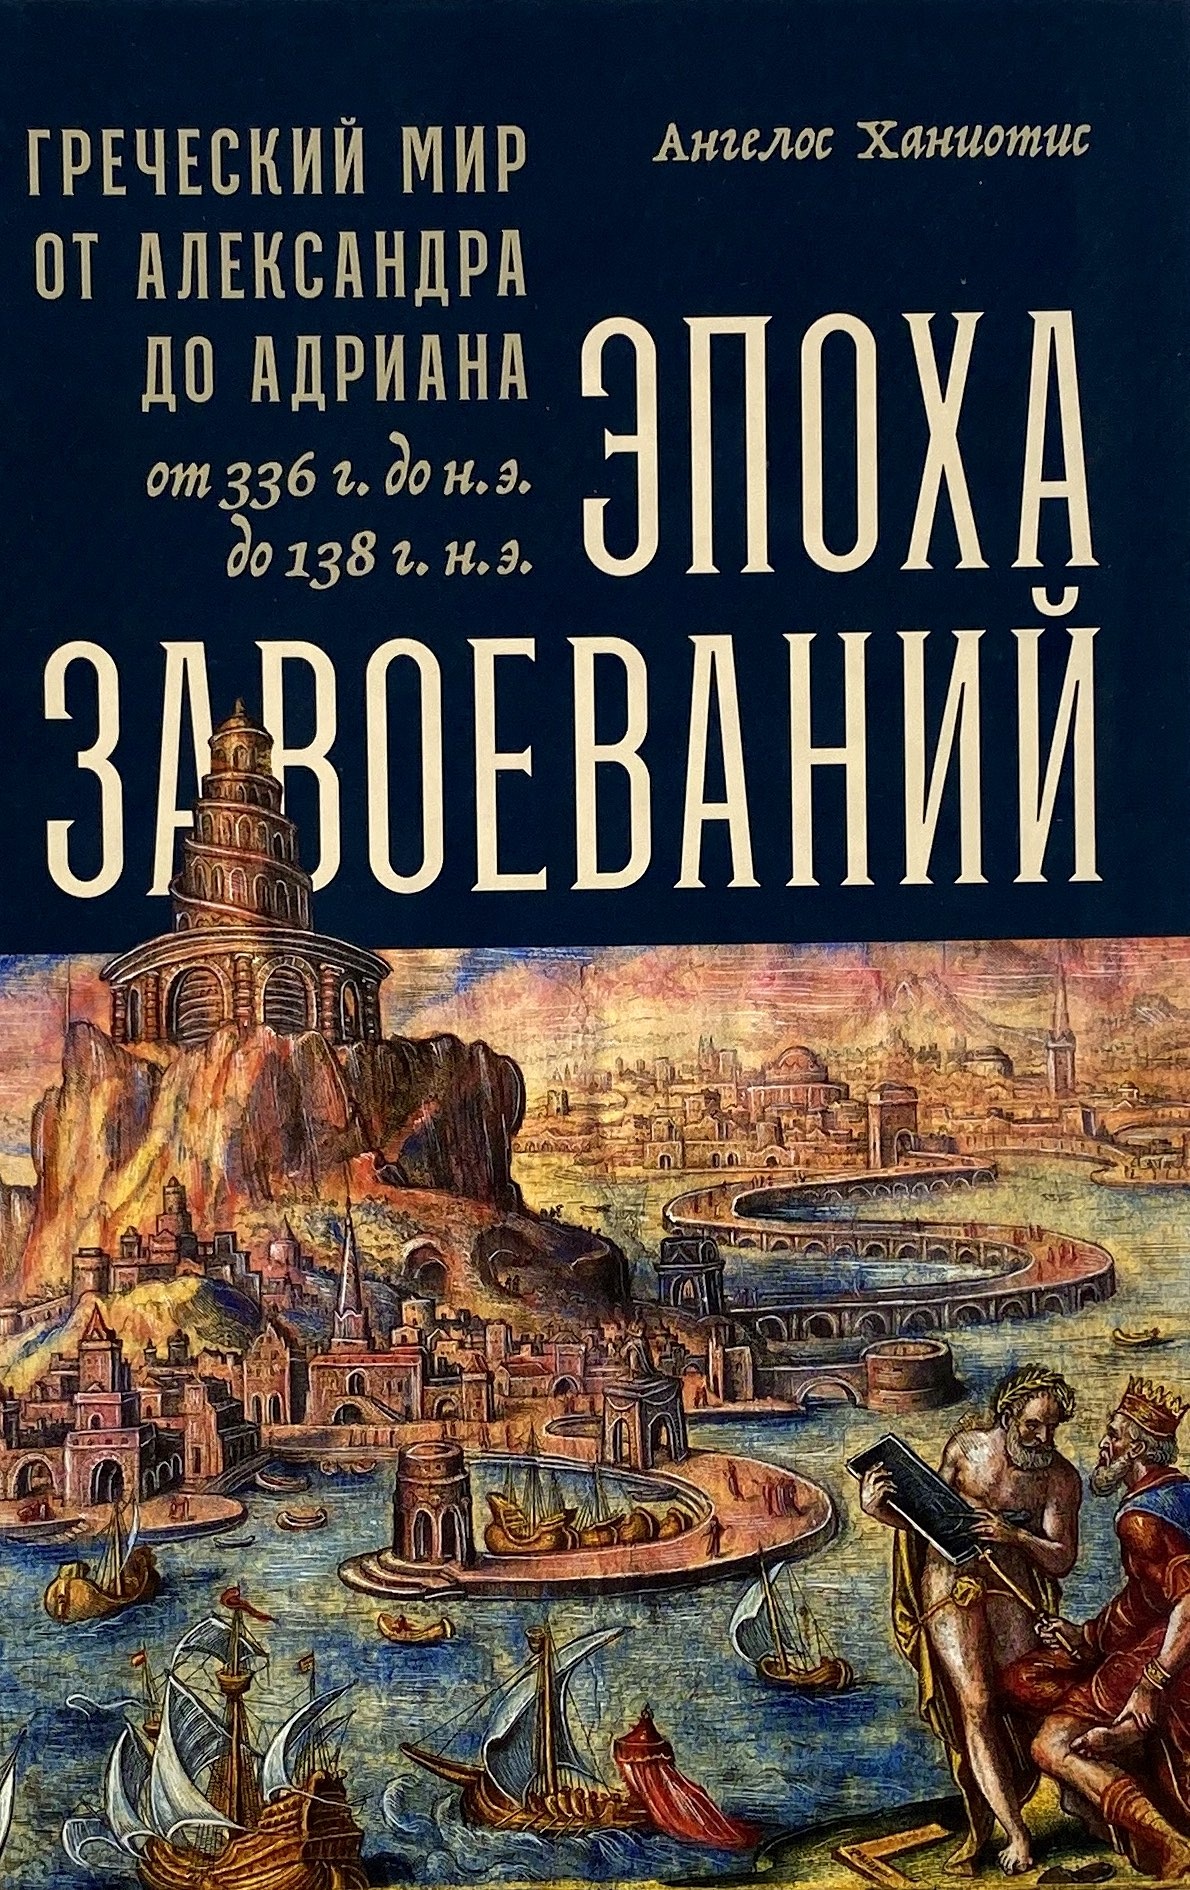 Эпоха завоеваний. Греческий мир от Александра до Адриана (336 г. до н.э. — 138 г. н.э.). Автор — Ангелос Ханиотис. 